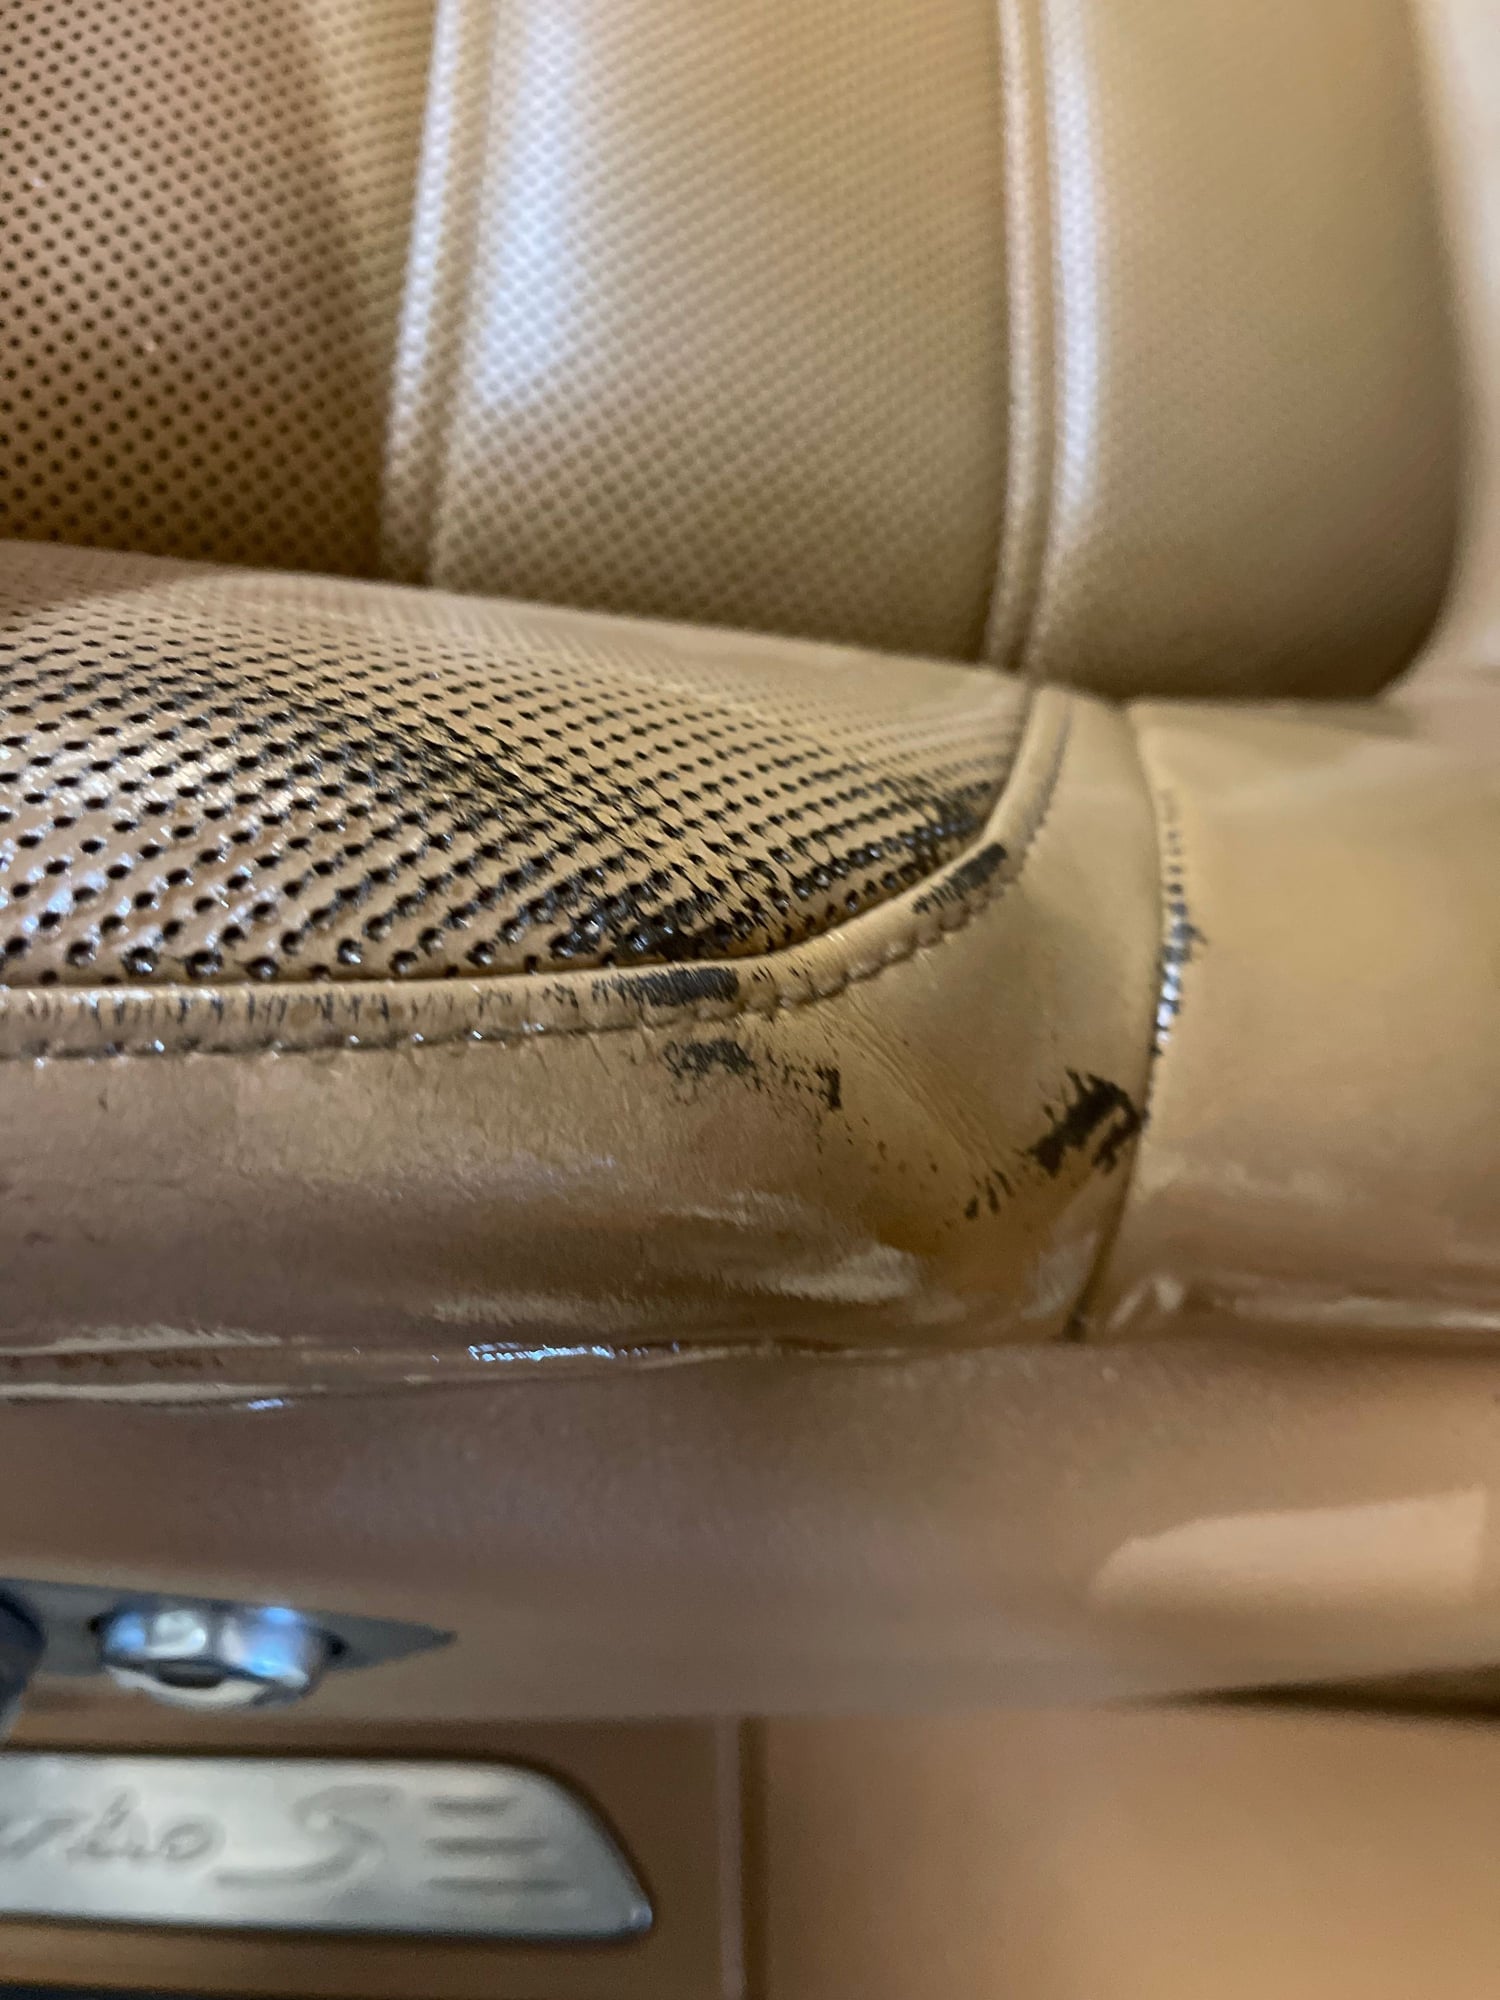 Leather Repair? - Rennlist - Porsche Discussion Forums